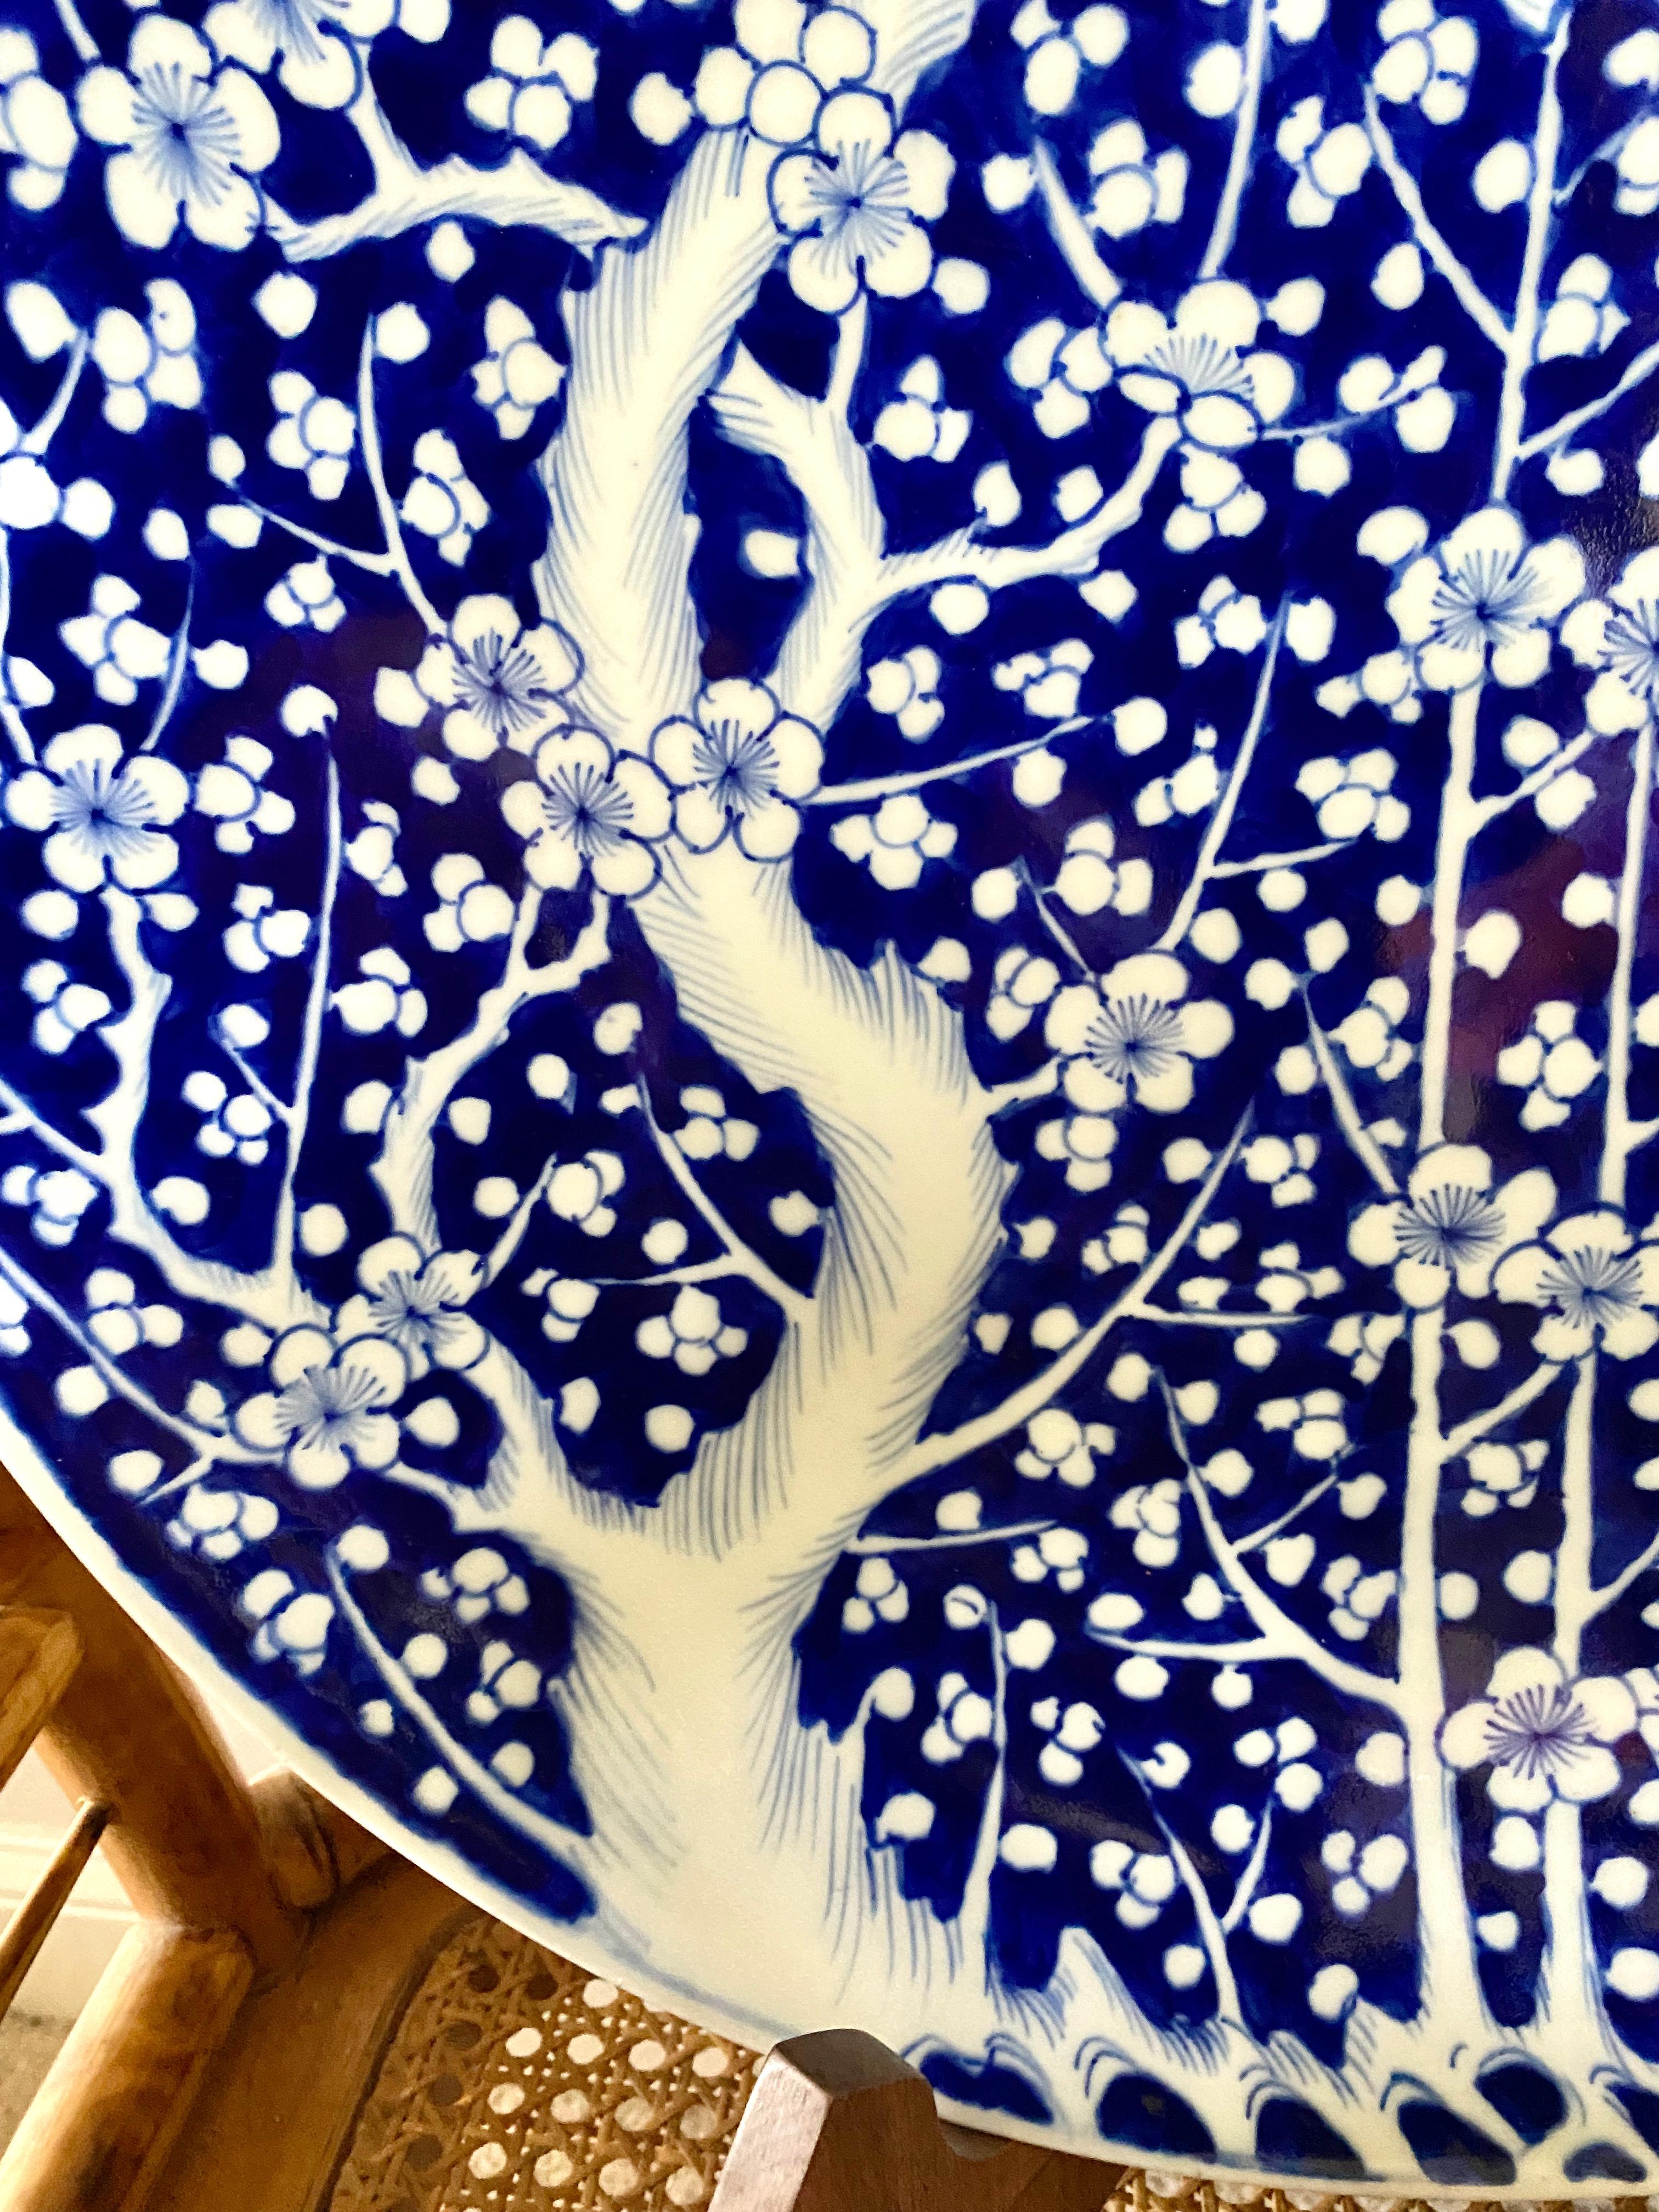 Dies ist ein sehr großes blau-weißes Ladegerät von Arita, handbemalt mit einem Prunus-Muster. Das Ladegerät stammt aus dem frühen oder mittleren 20. Jahrhundert und ist insgesamt in sehr gutem bis ausgezeichnetem Zustand. Es gibt einige Patina auf